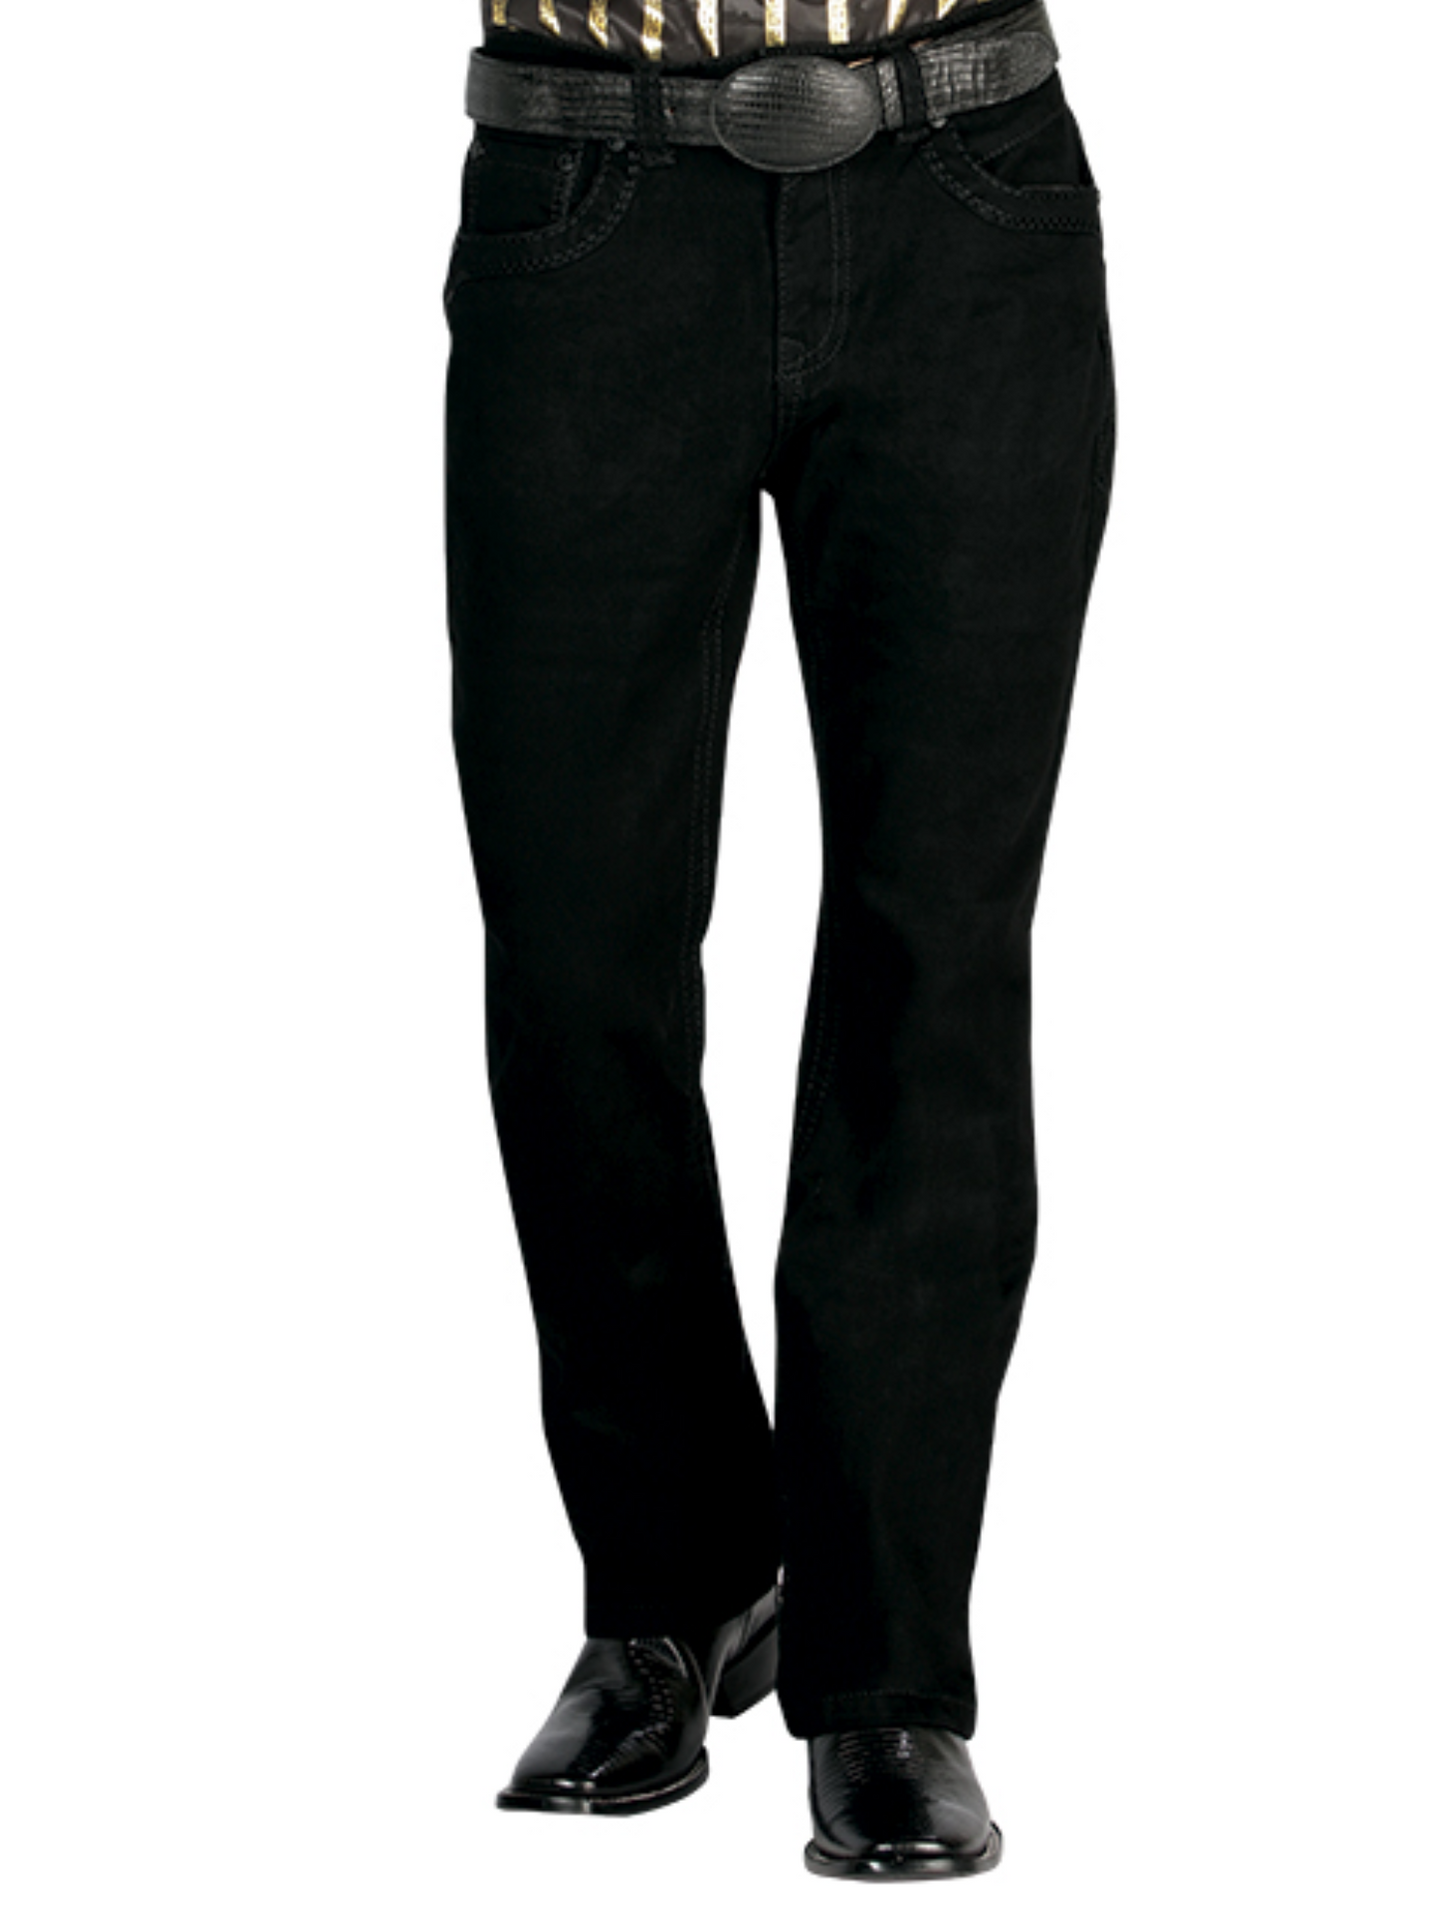 Black Boot Cut Denim Jeans for Men 'Centenario' - ID: 44840 Denim Jeans Centenario